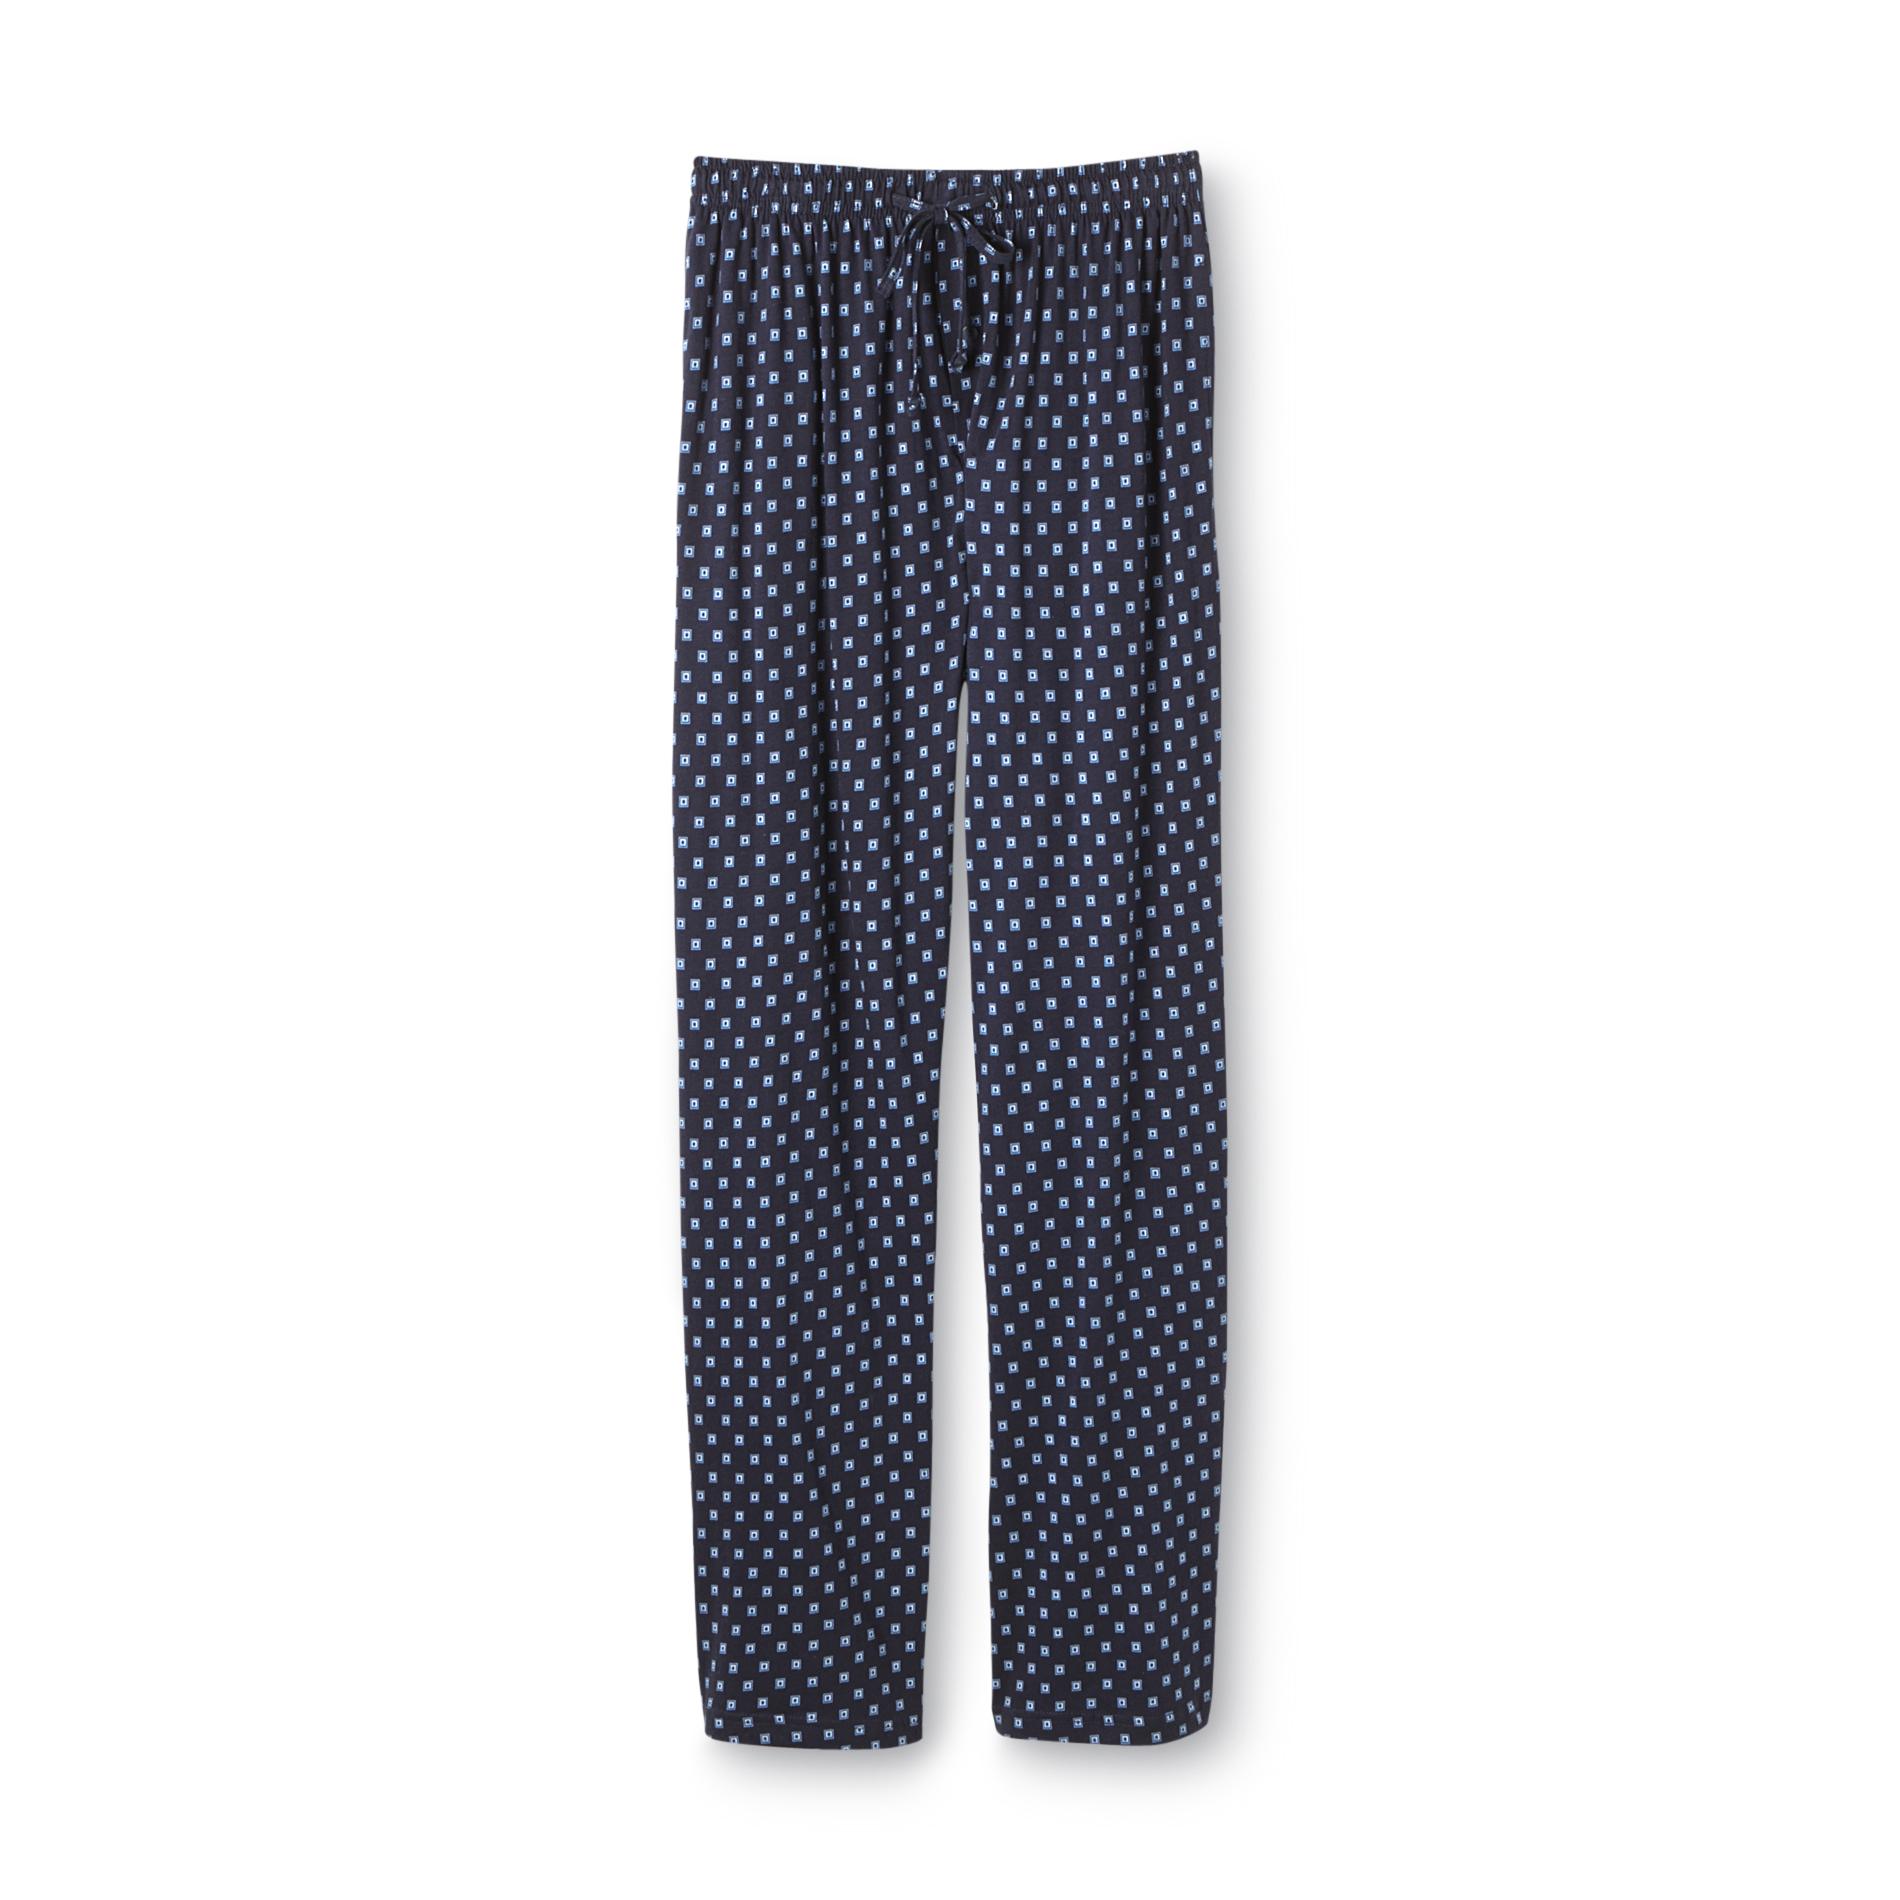 Covington Men's Pajama Pants - Geometric